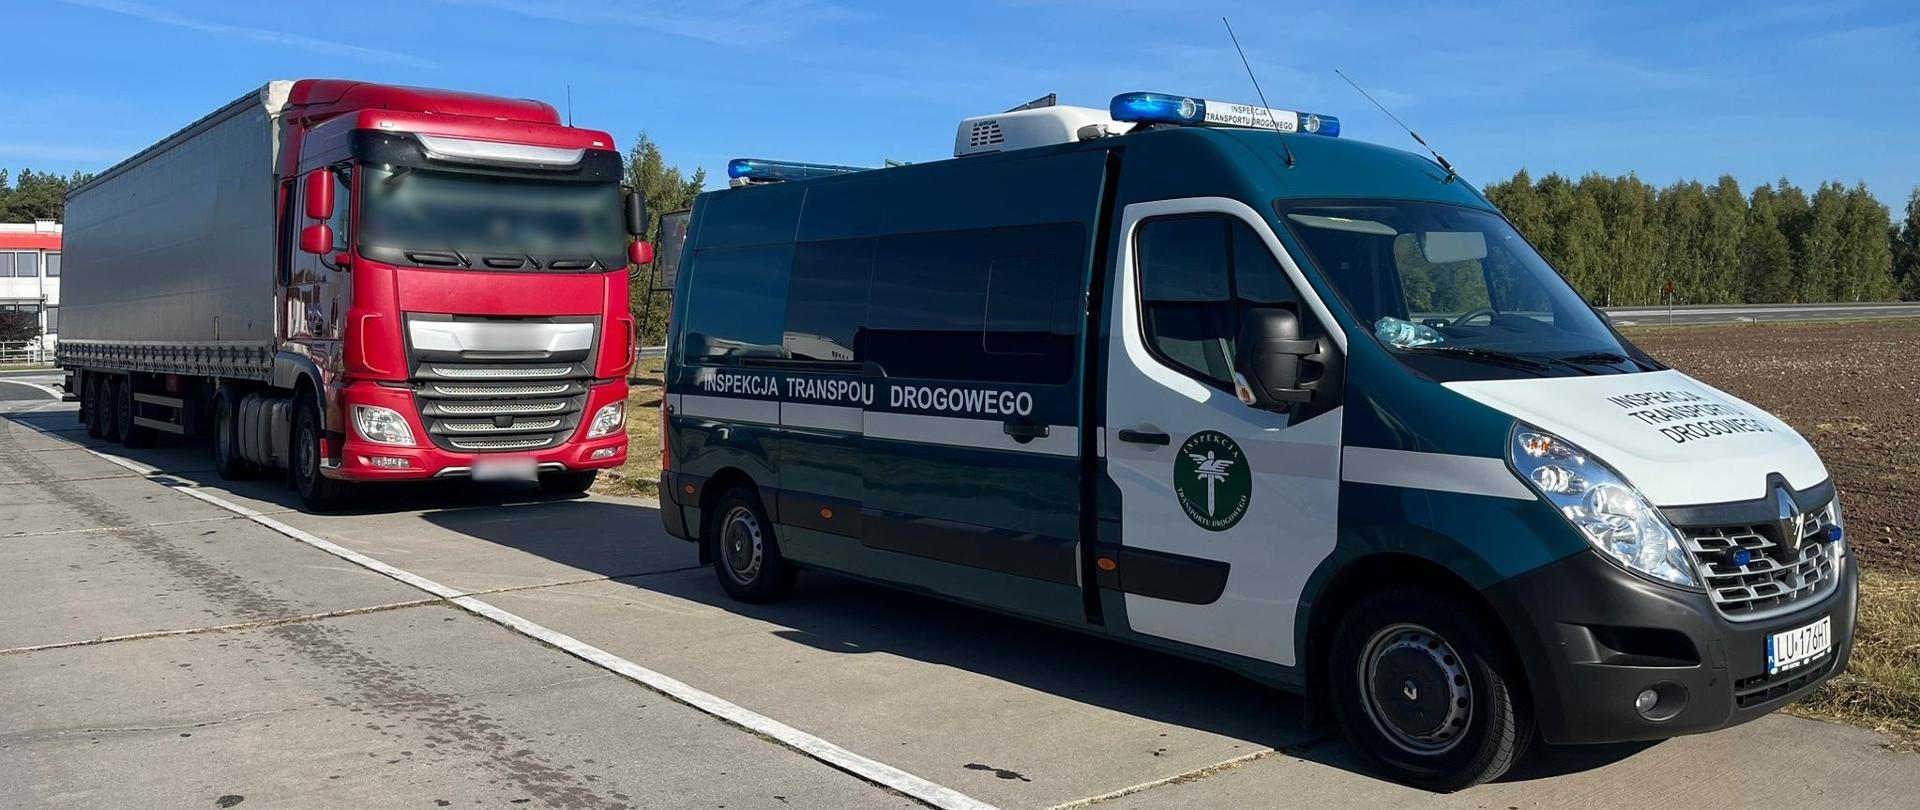 Miejsce zatrzymania do kontroli nietrzeźwego kierowcy ciężarówki przez patrol lubelskiej Inspekcji Transportu Drogowego.